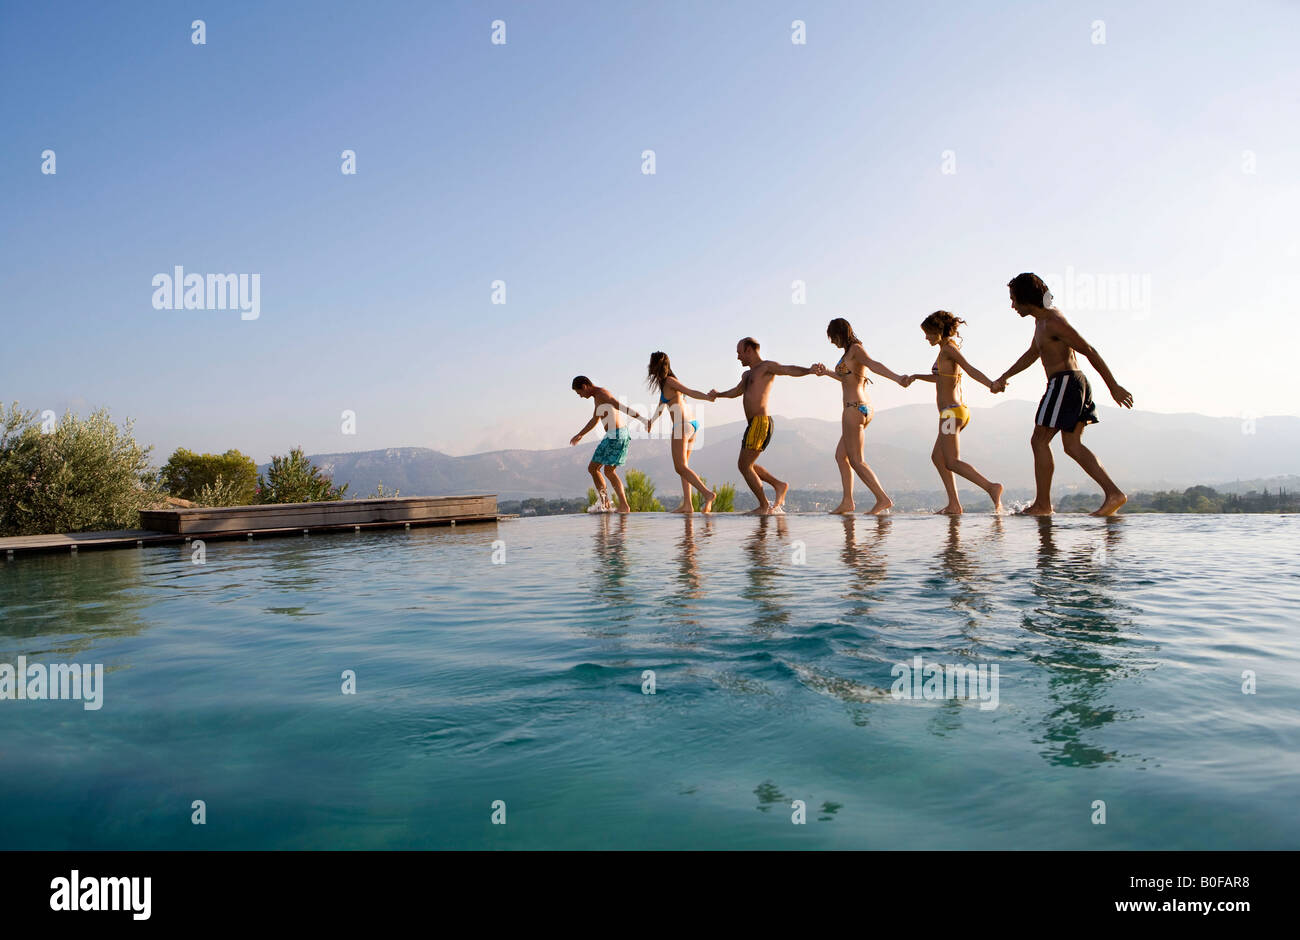 La gente caminando por una piscina, tomados de las manos Foto de stock